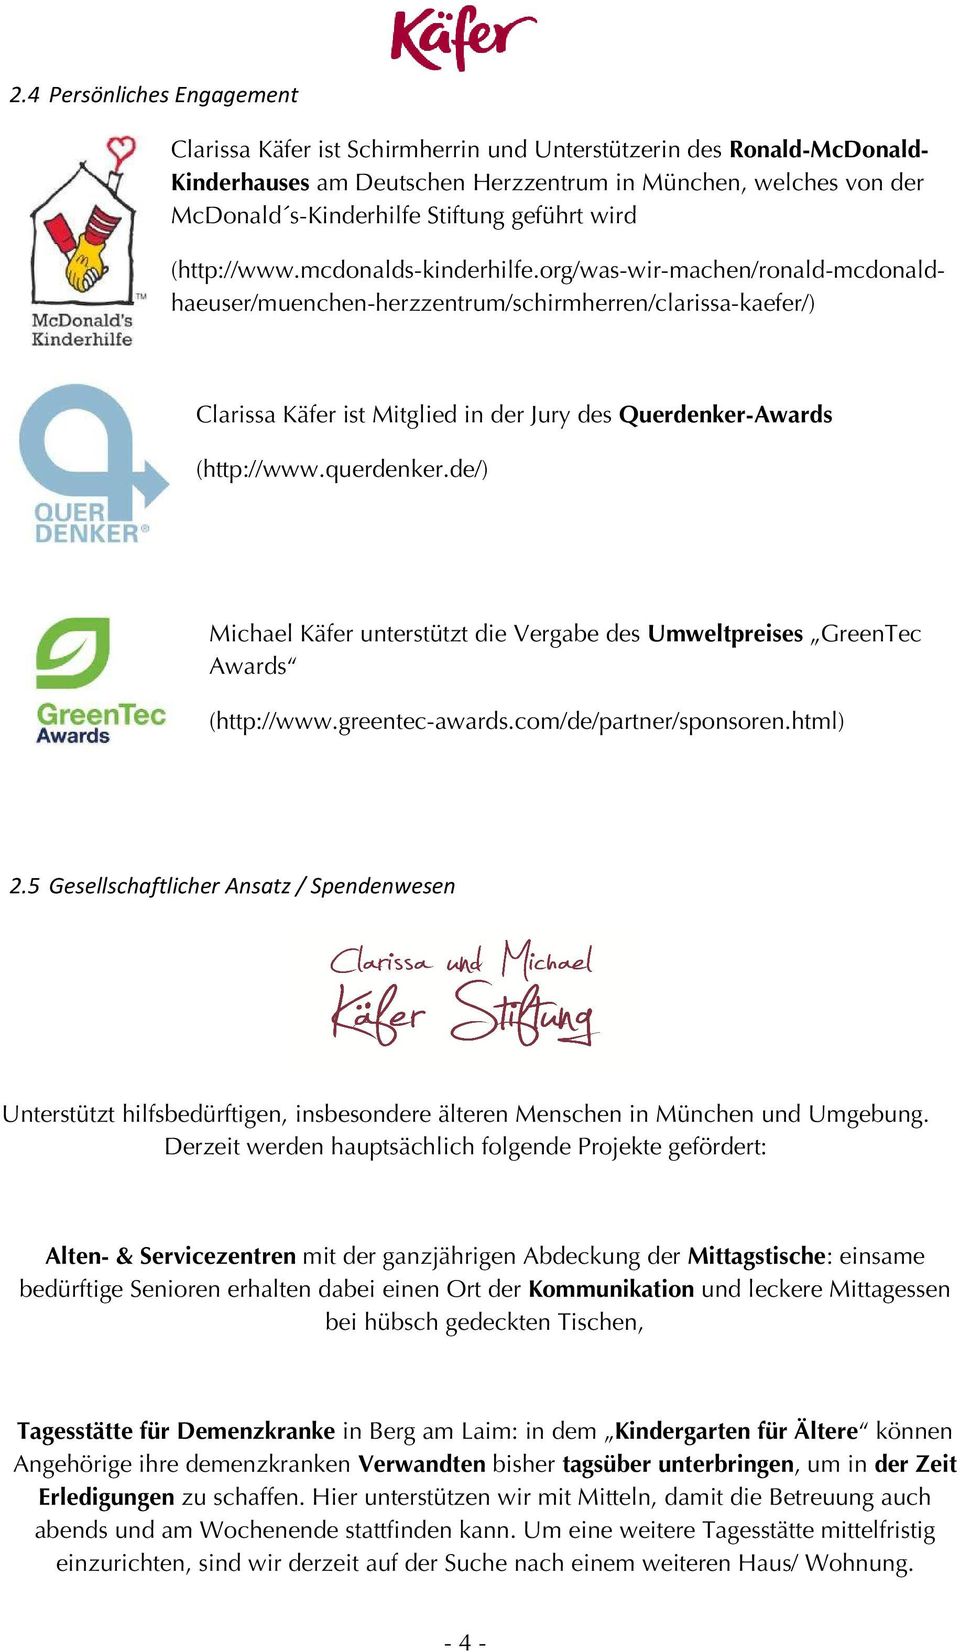 org/was-wir-machen/ronald machen/ronald-mcdonaldkaefer/) haeuser/muenchen-herzzentrum/schirmherren/clarissa-kaefer/ Clarissa Käfer ist Mitglied in der Jury des Querdenker-Awards (http://www.